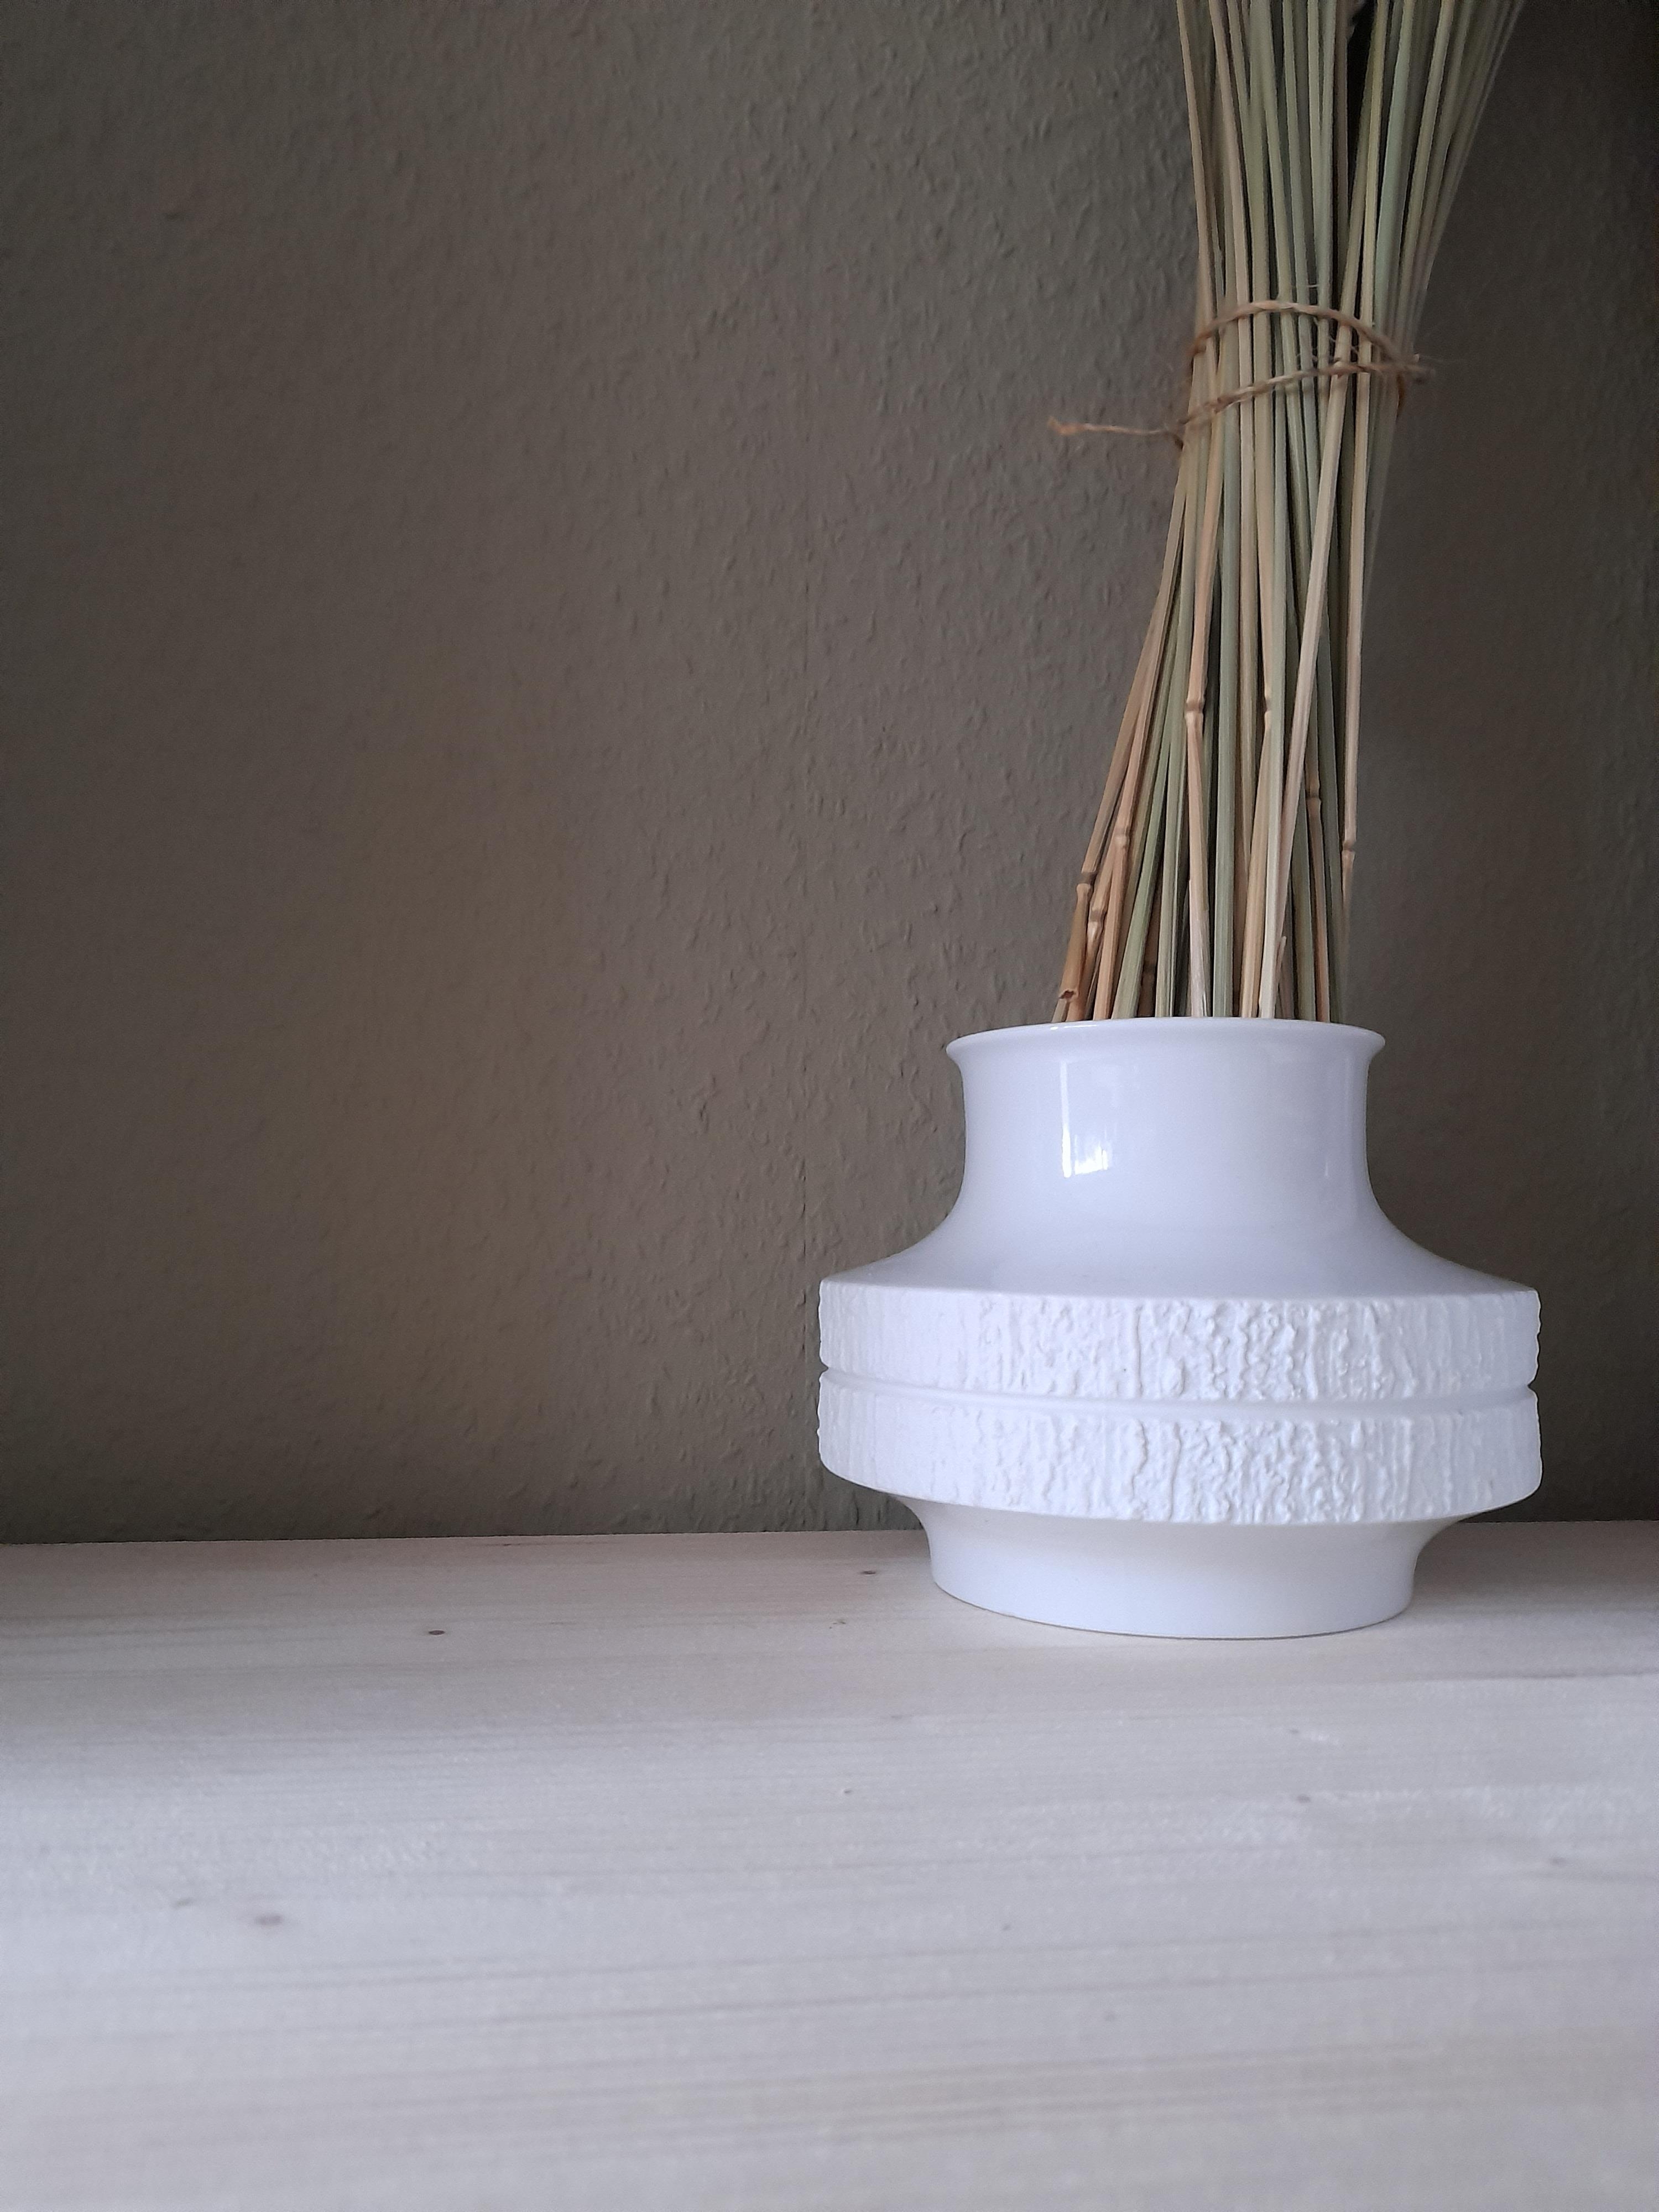 Diese hübsche Vase habe ich gestern gefunden - habt ihr bei euch auch ein Tauschregal? #new #vase #whitelove #forfree #t